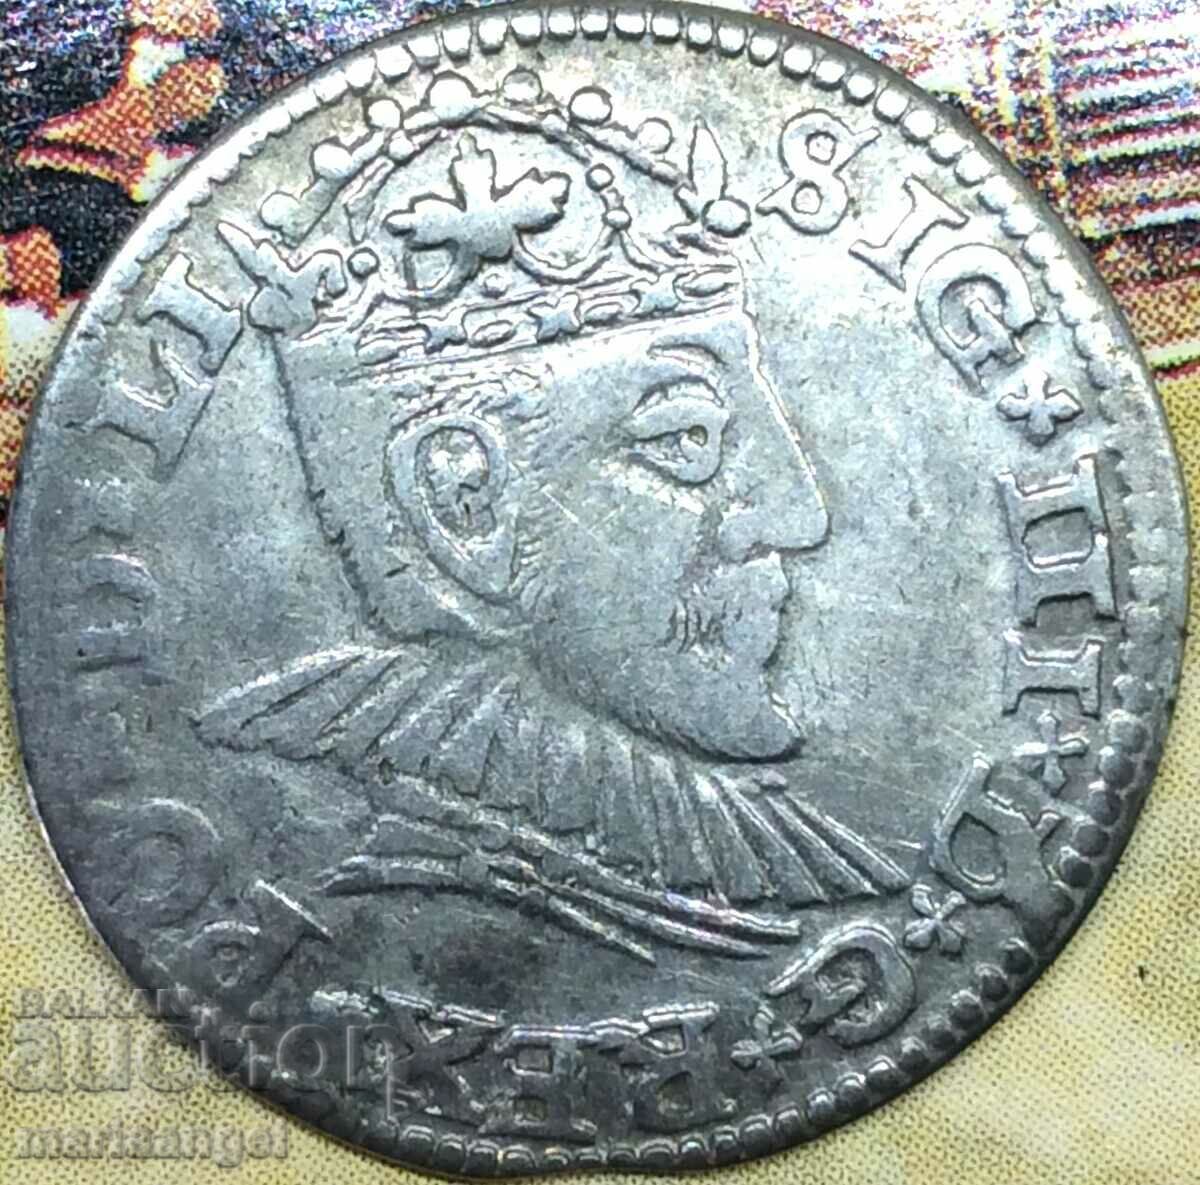 Poland 3 groszy (troika) 1590 Sigismund III silver - rare